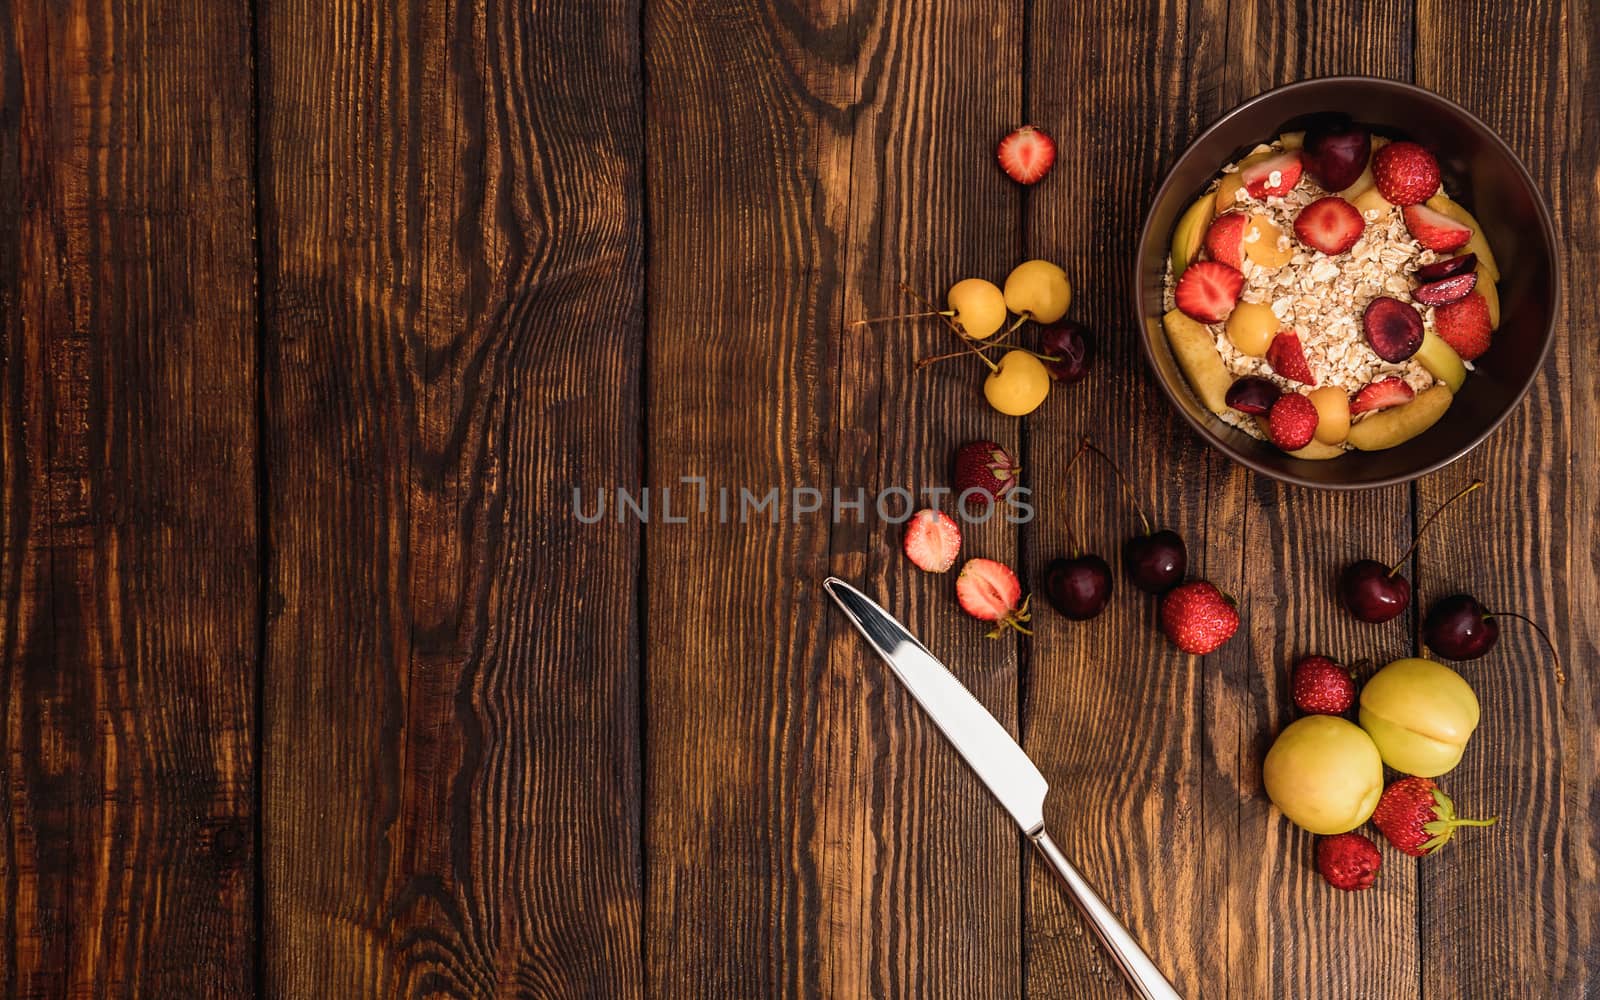 Breakfast with porridge, sweet fruits and berries by Seva_blsv